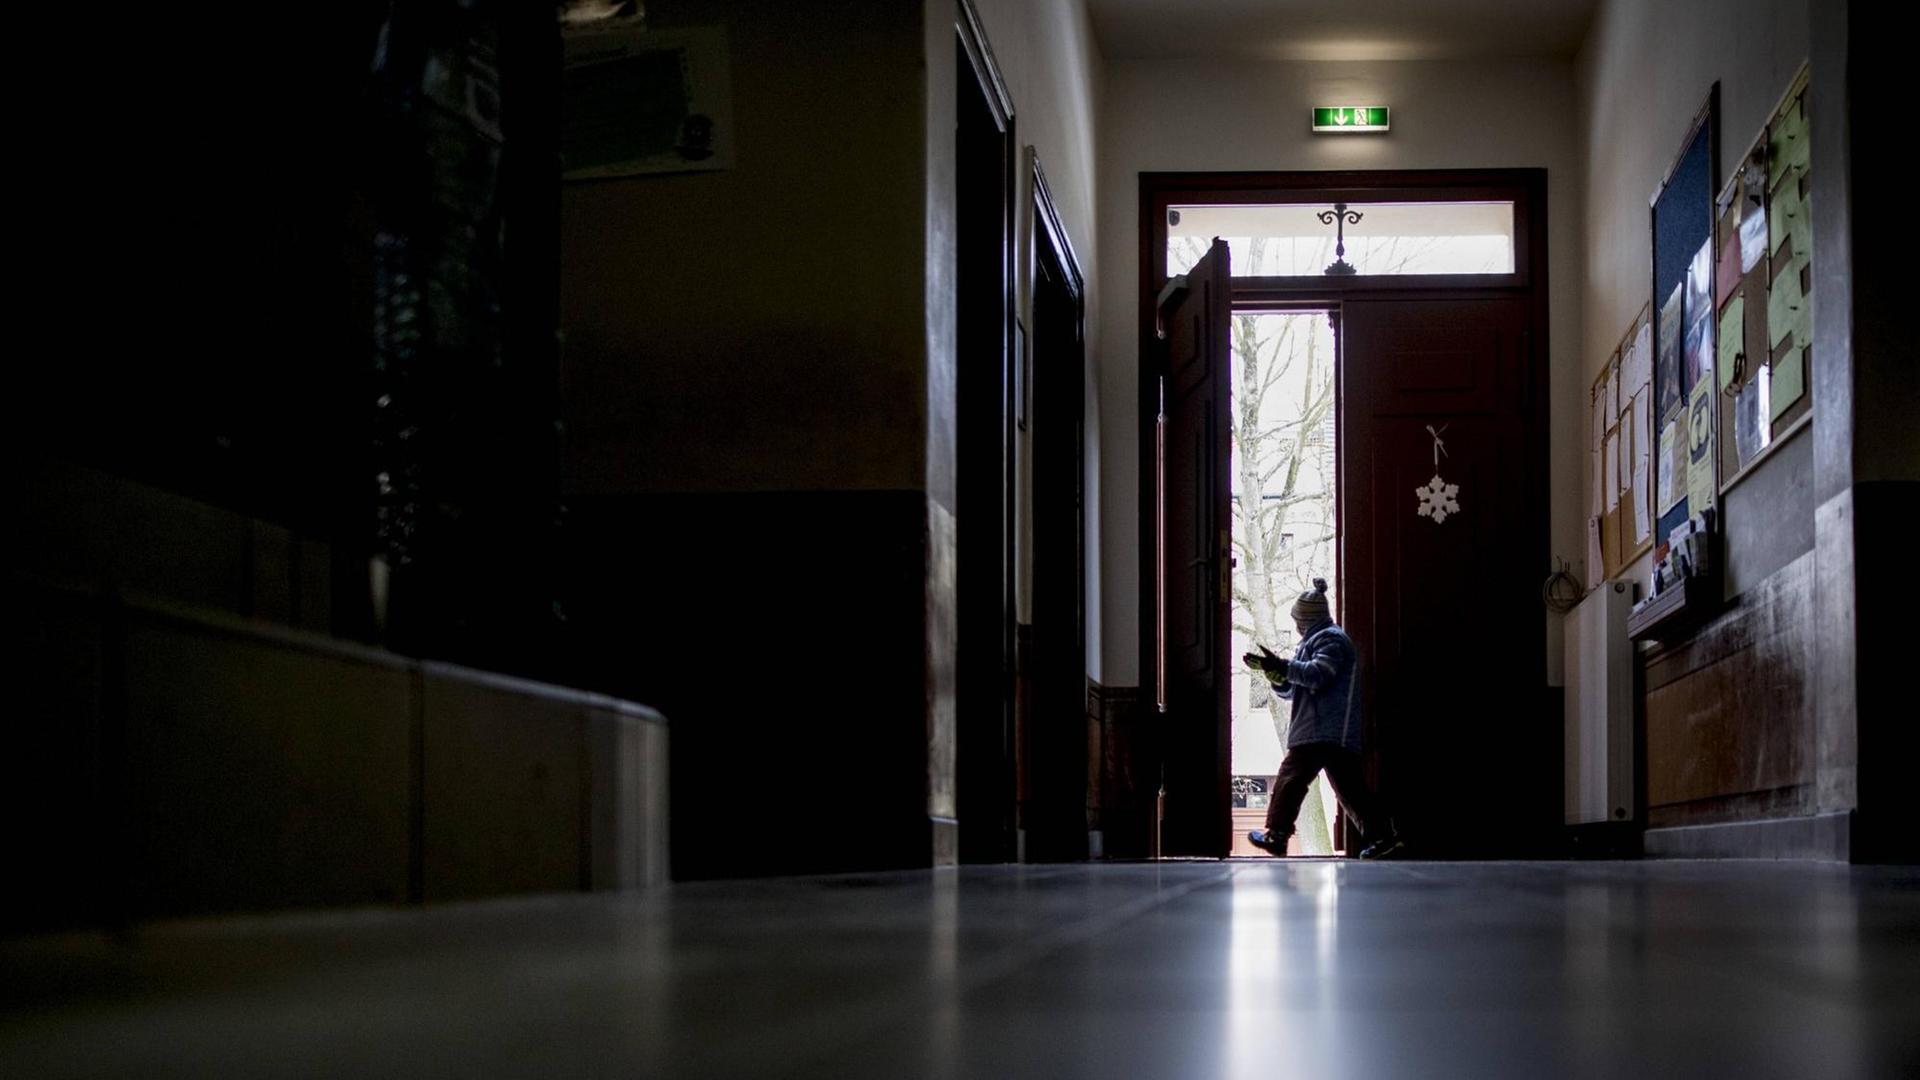 Blick durch den Gang einer Schule. Ein Schüler verlässt das Gebäude durch eine Tür am Ende des Gangs.